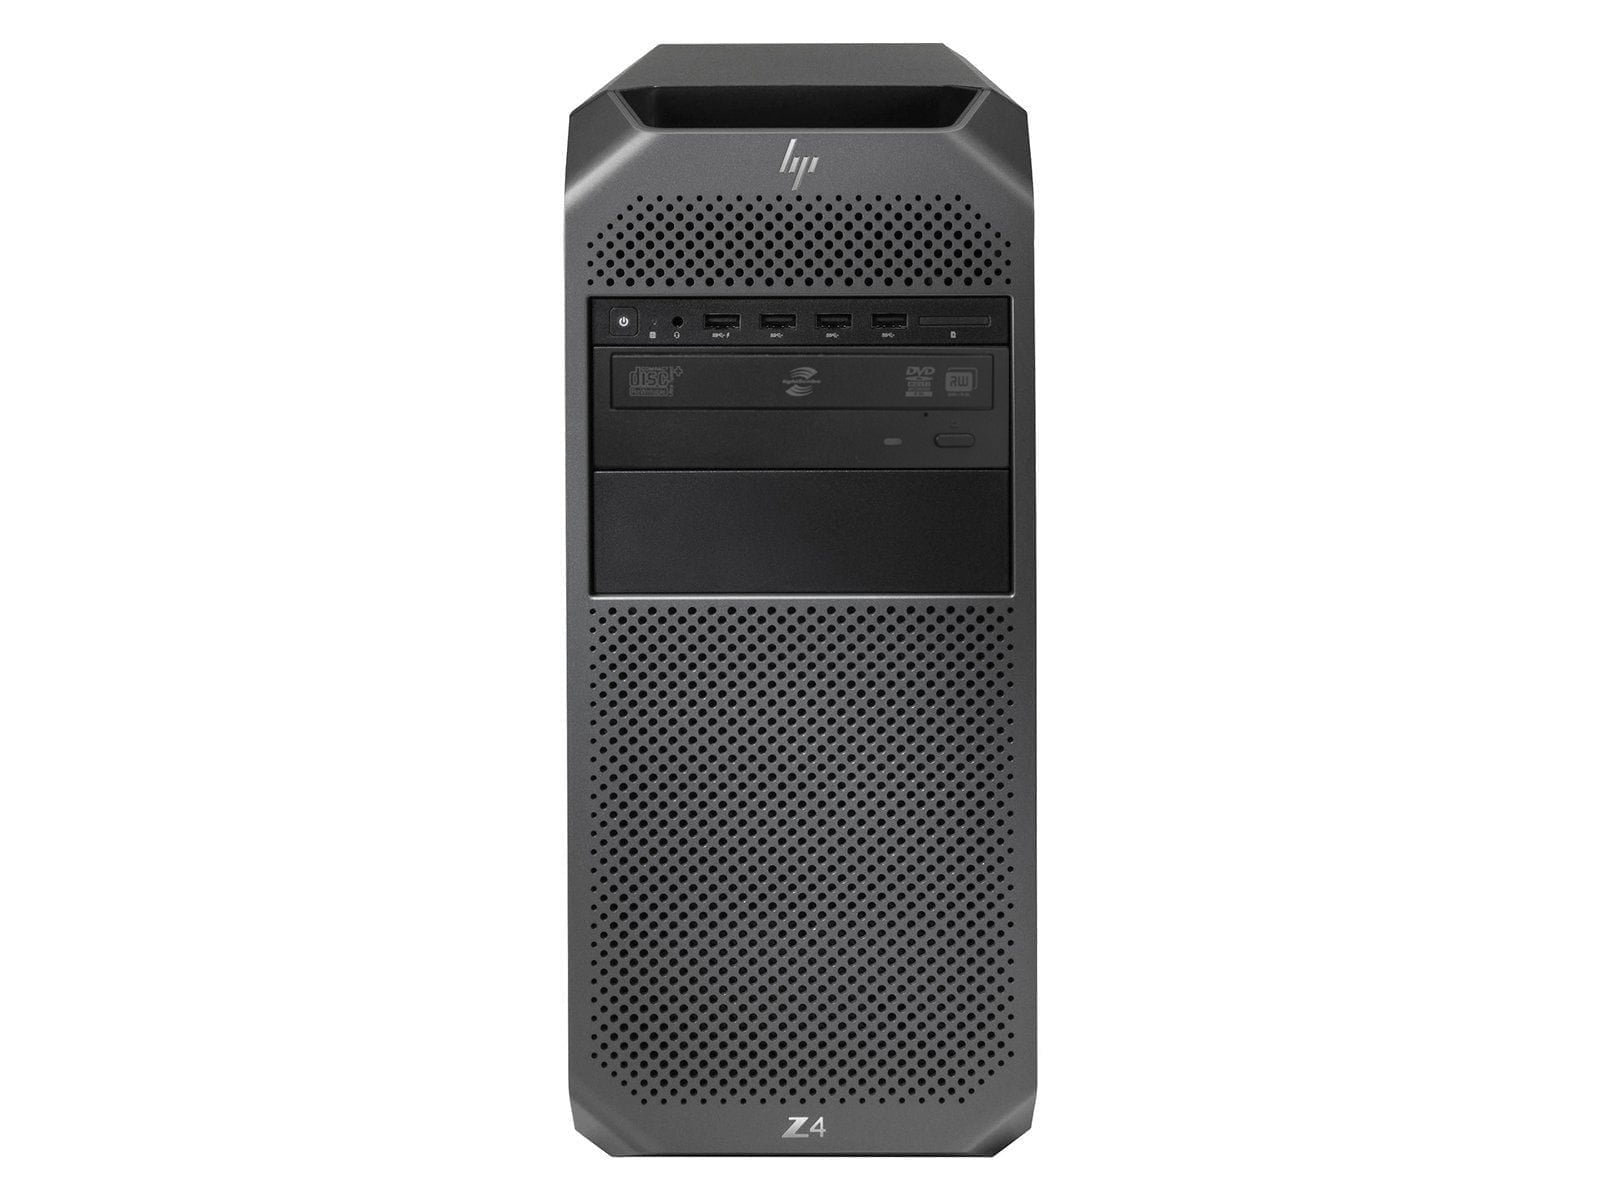 HP Z4 G4 | Xéon W-2265 | Mémoire DDR128 ECC de 4 Go | Disque SSD de 500 Go | AMD WX7100